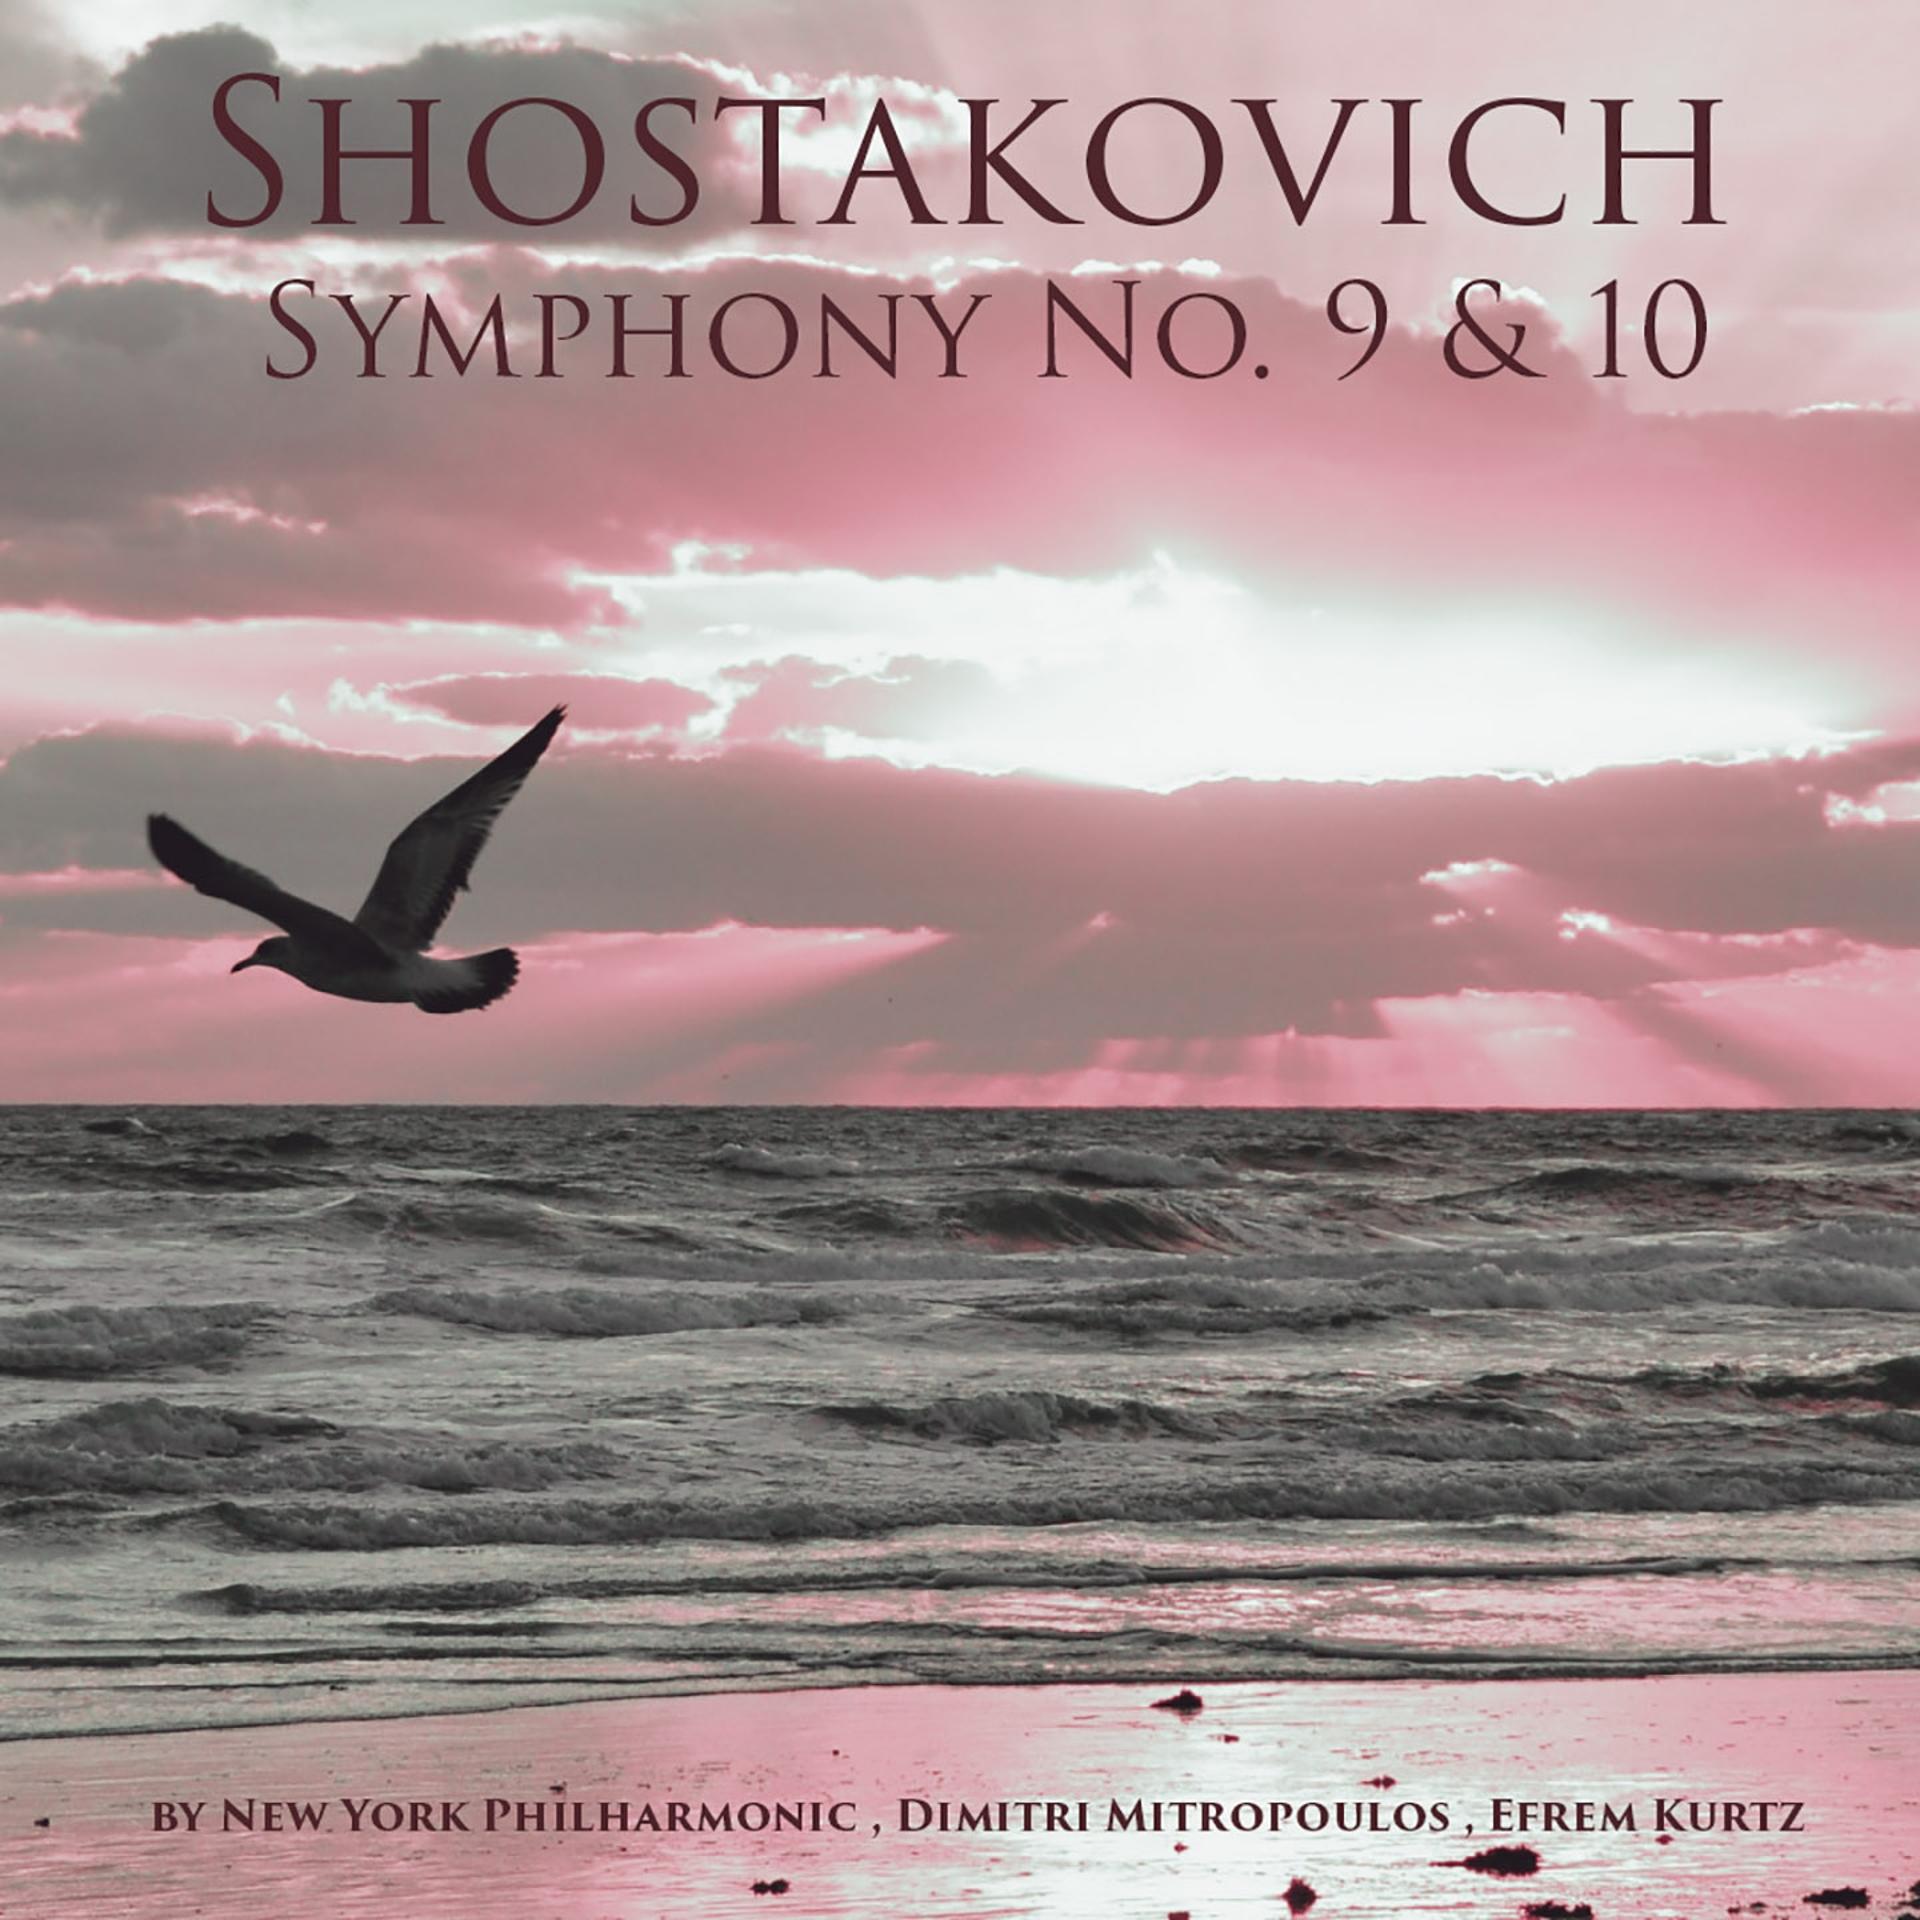 Постер альбома Shostakovich: Symphonies Nos. 9 & 10